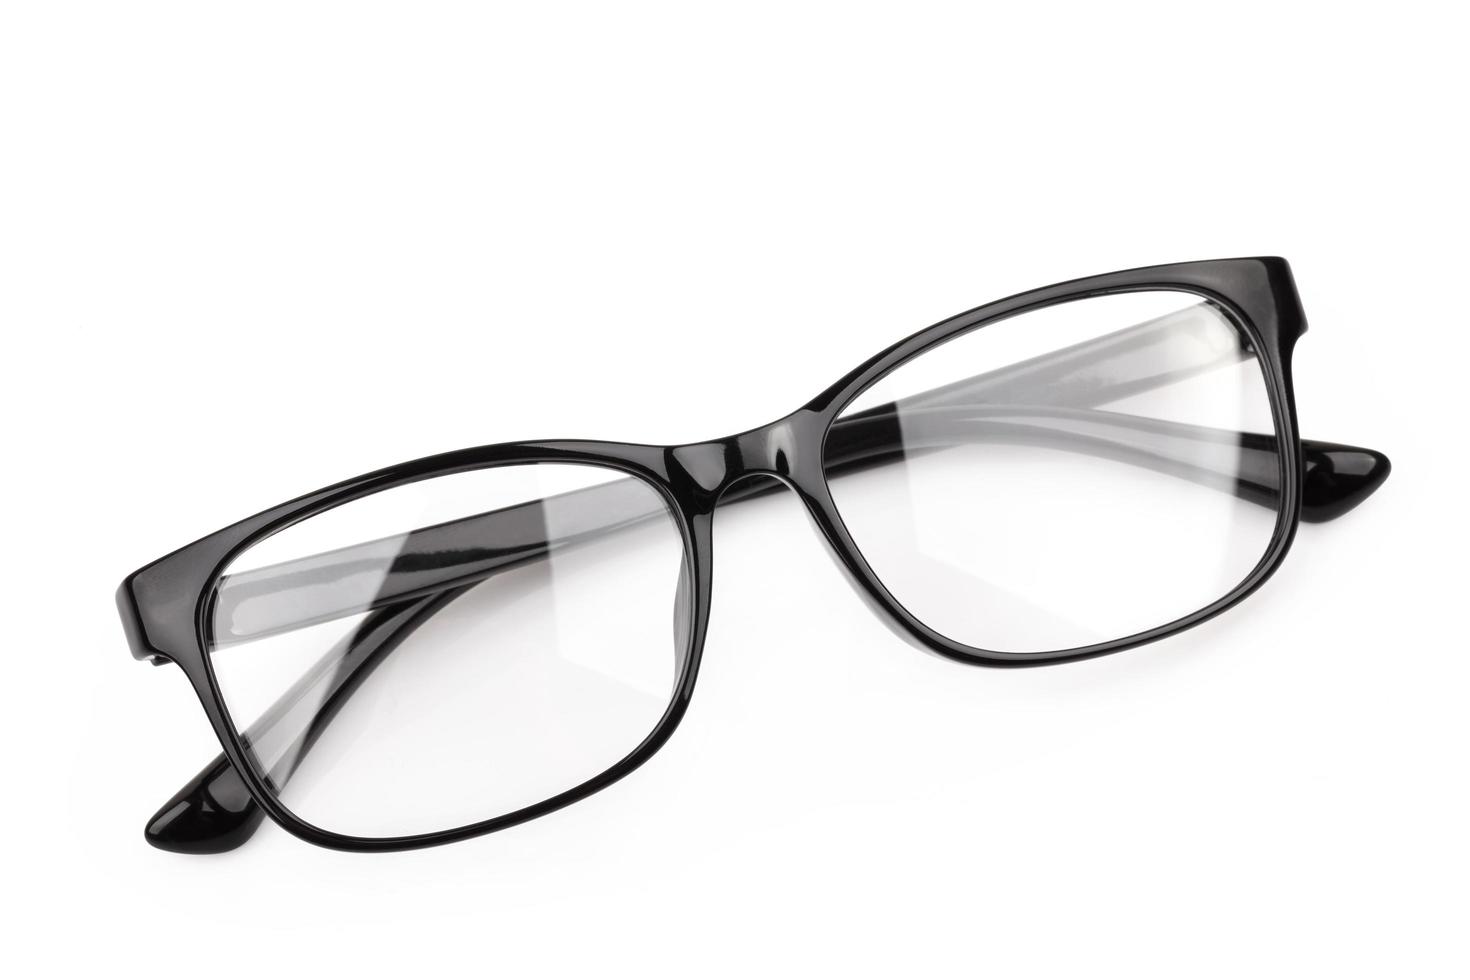 eyeglasses isolated on white background photo